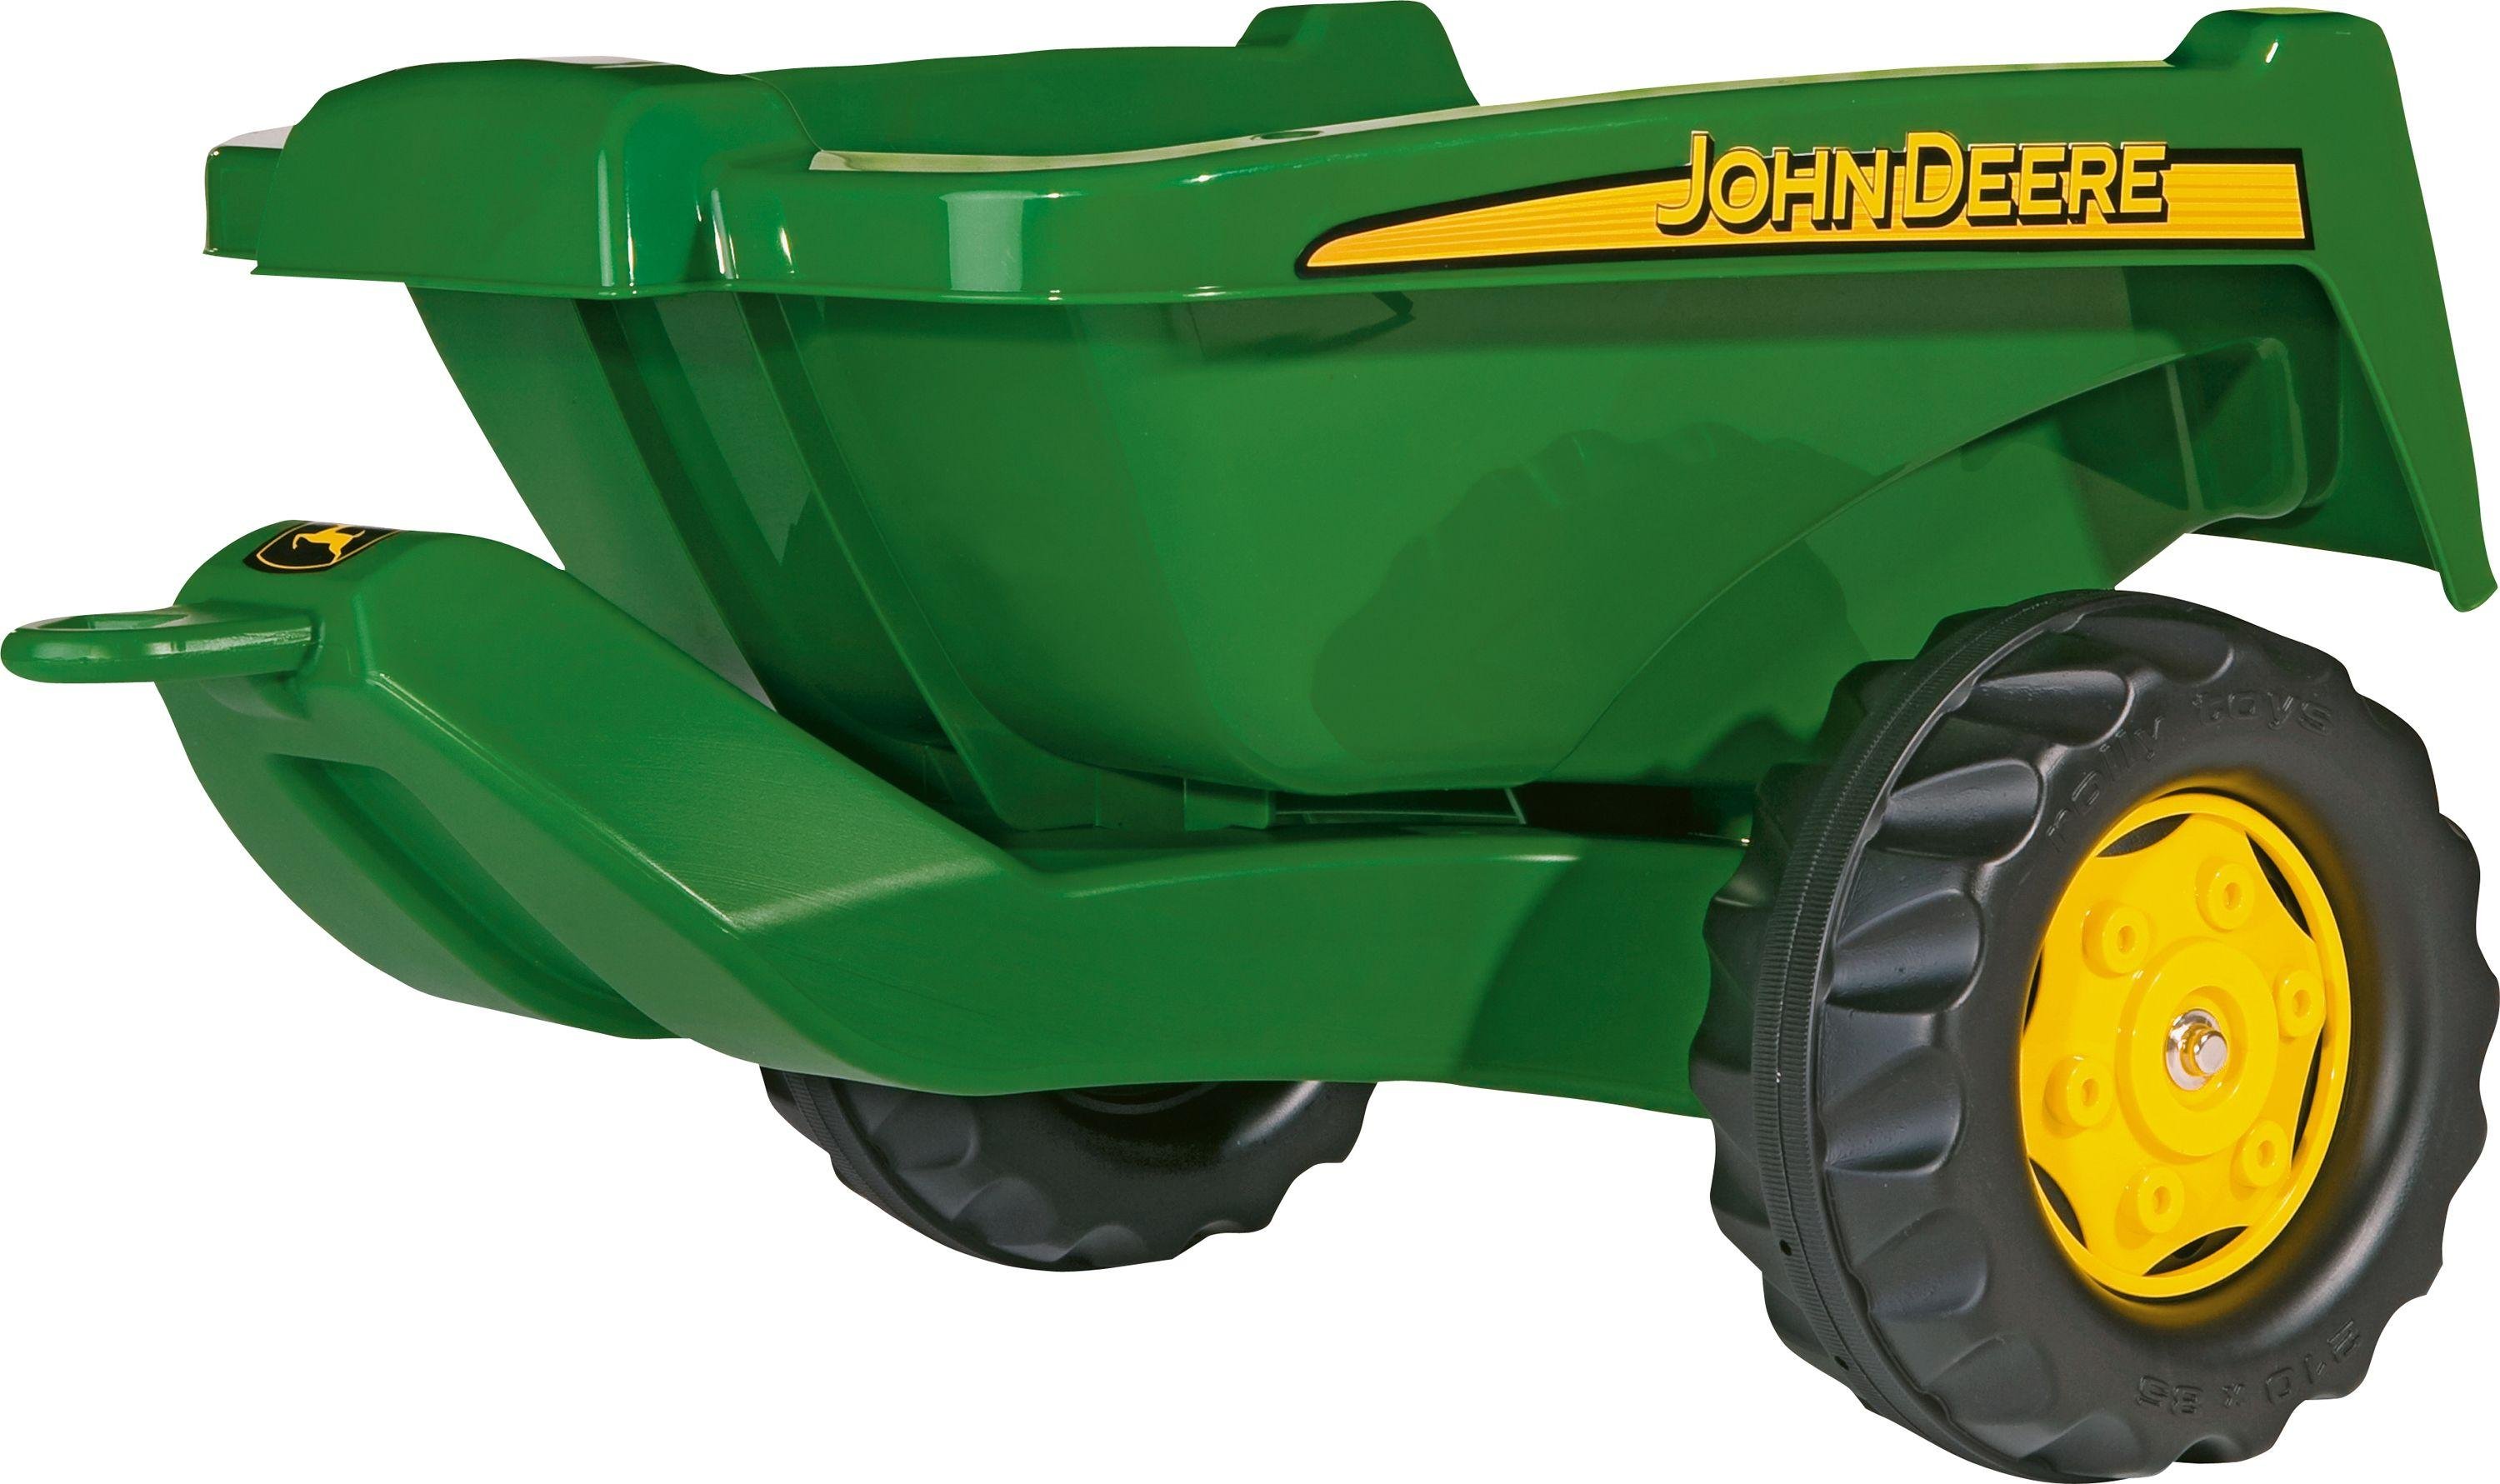 John Deere Kipper Trailer for Child's Tractor. Review